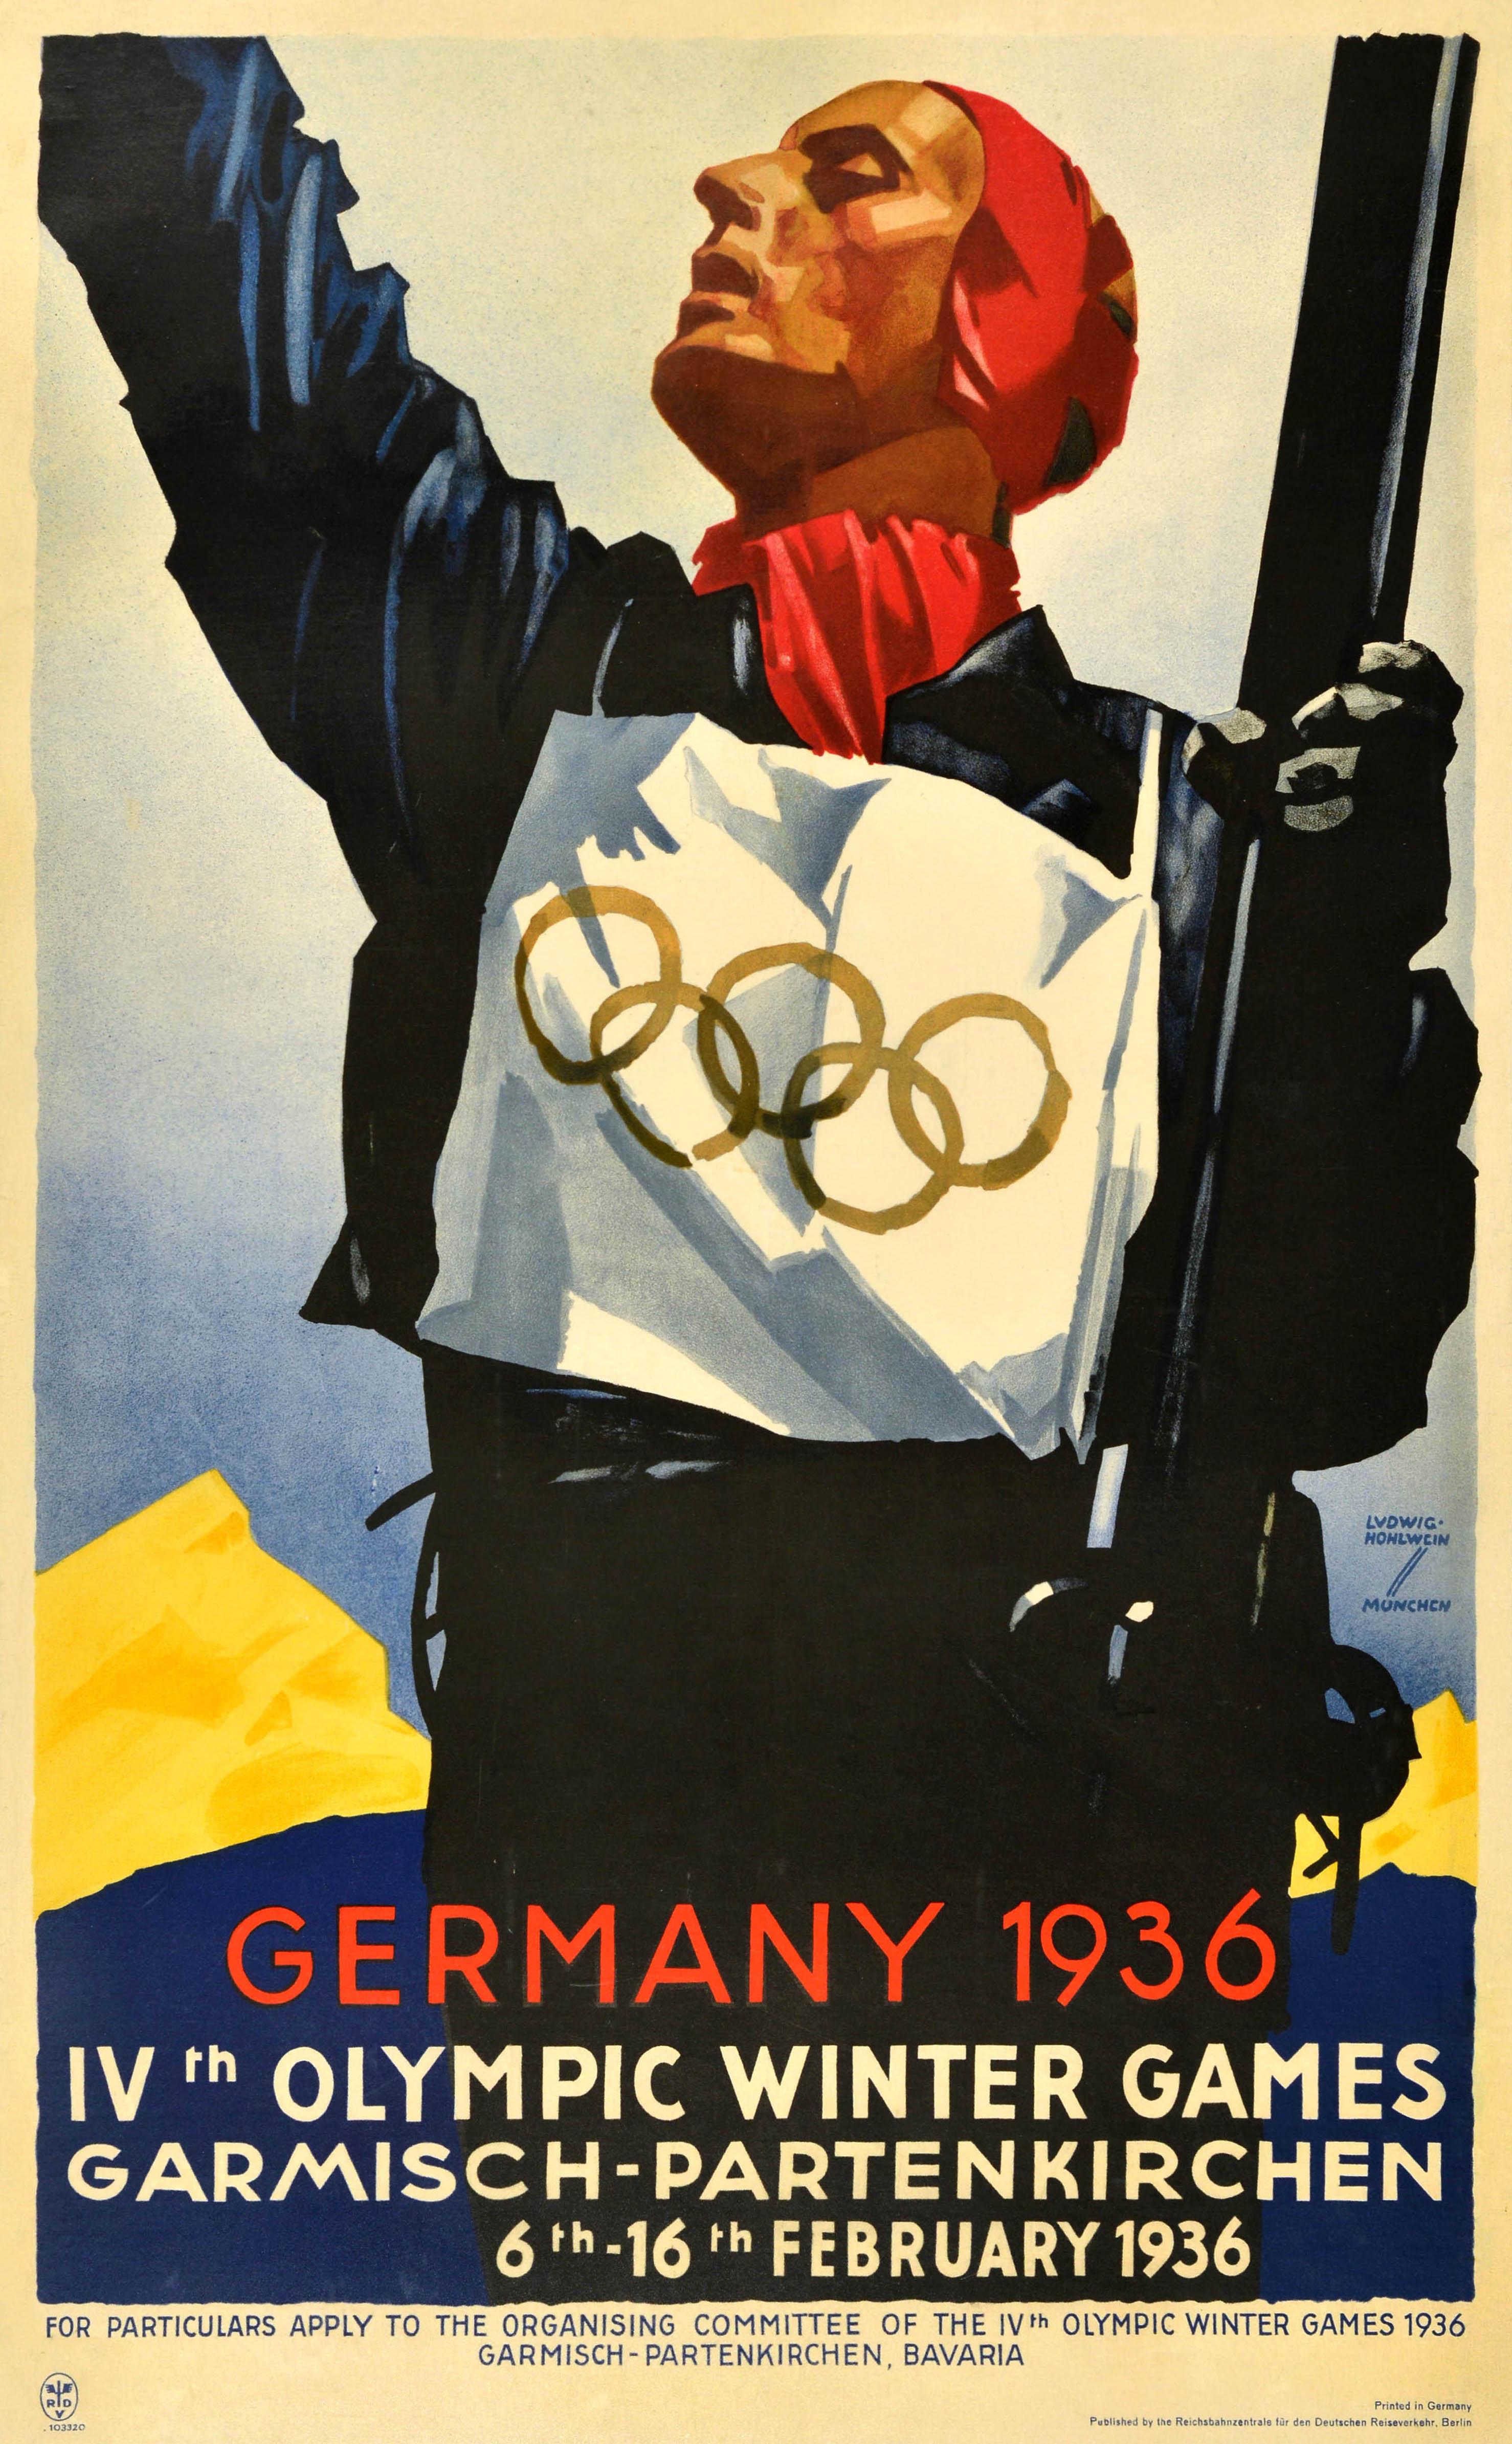 Affiche sportive vintage originale - Allemagne 1936 IVe Jeux olympiques d'hiver Garmisch Partenkirchen 6-16 février - comportant une illustration dynamique de Ludwig Hohlwein (1874-1949) représentant un skieur portant un dossard avec le symbole des